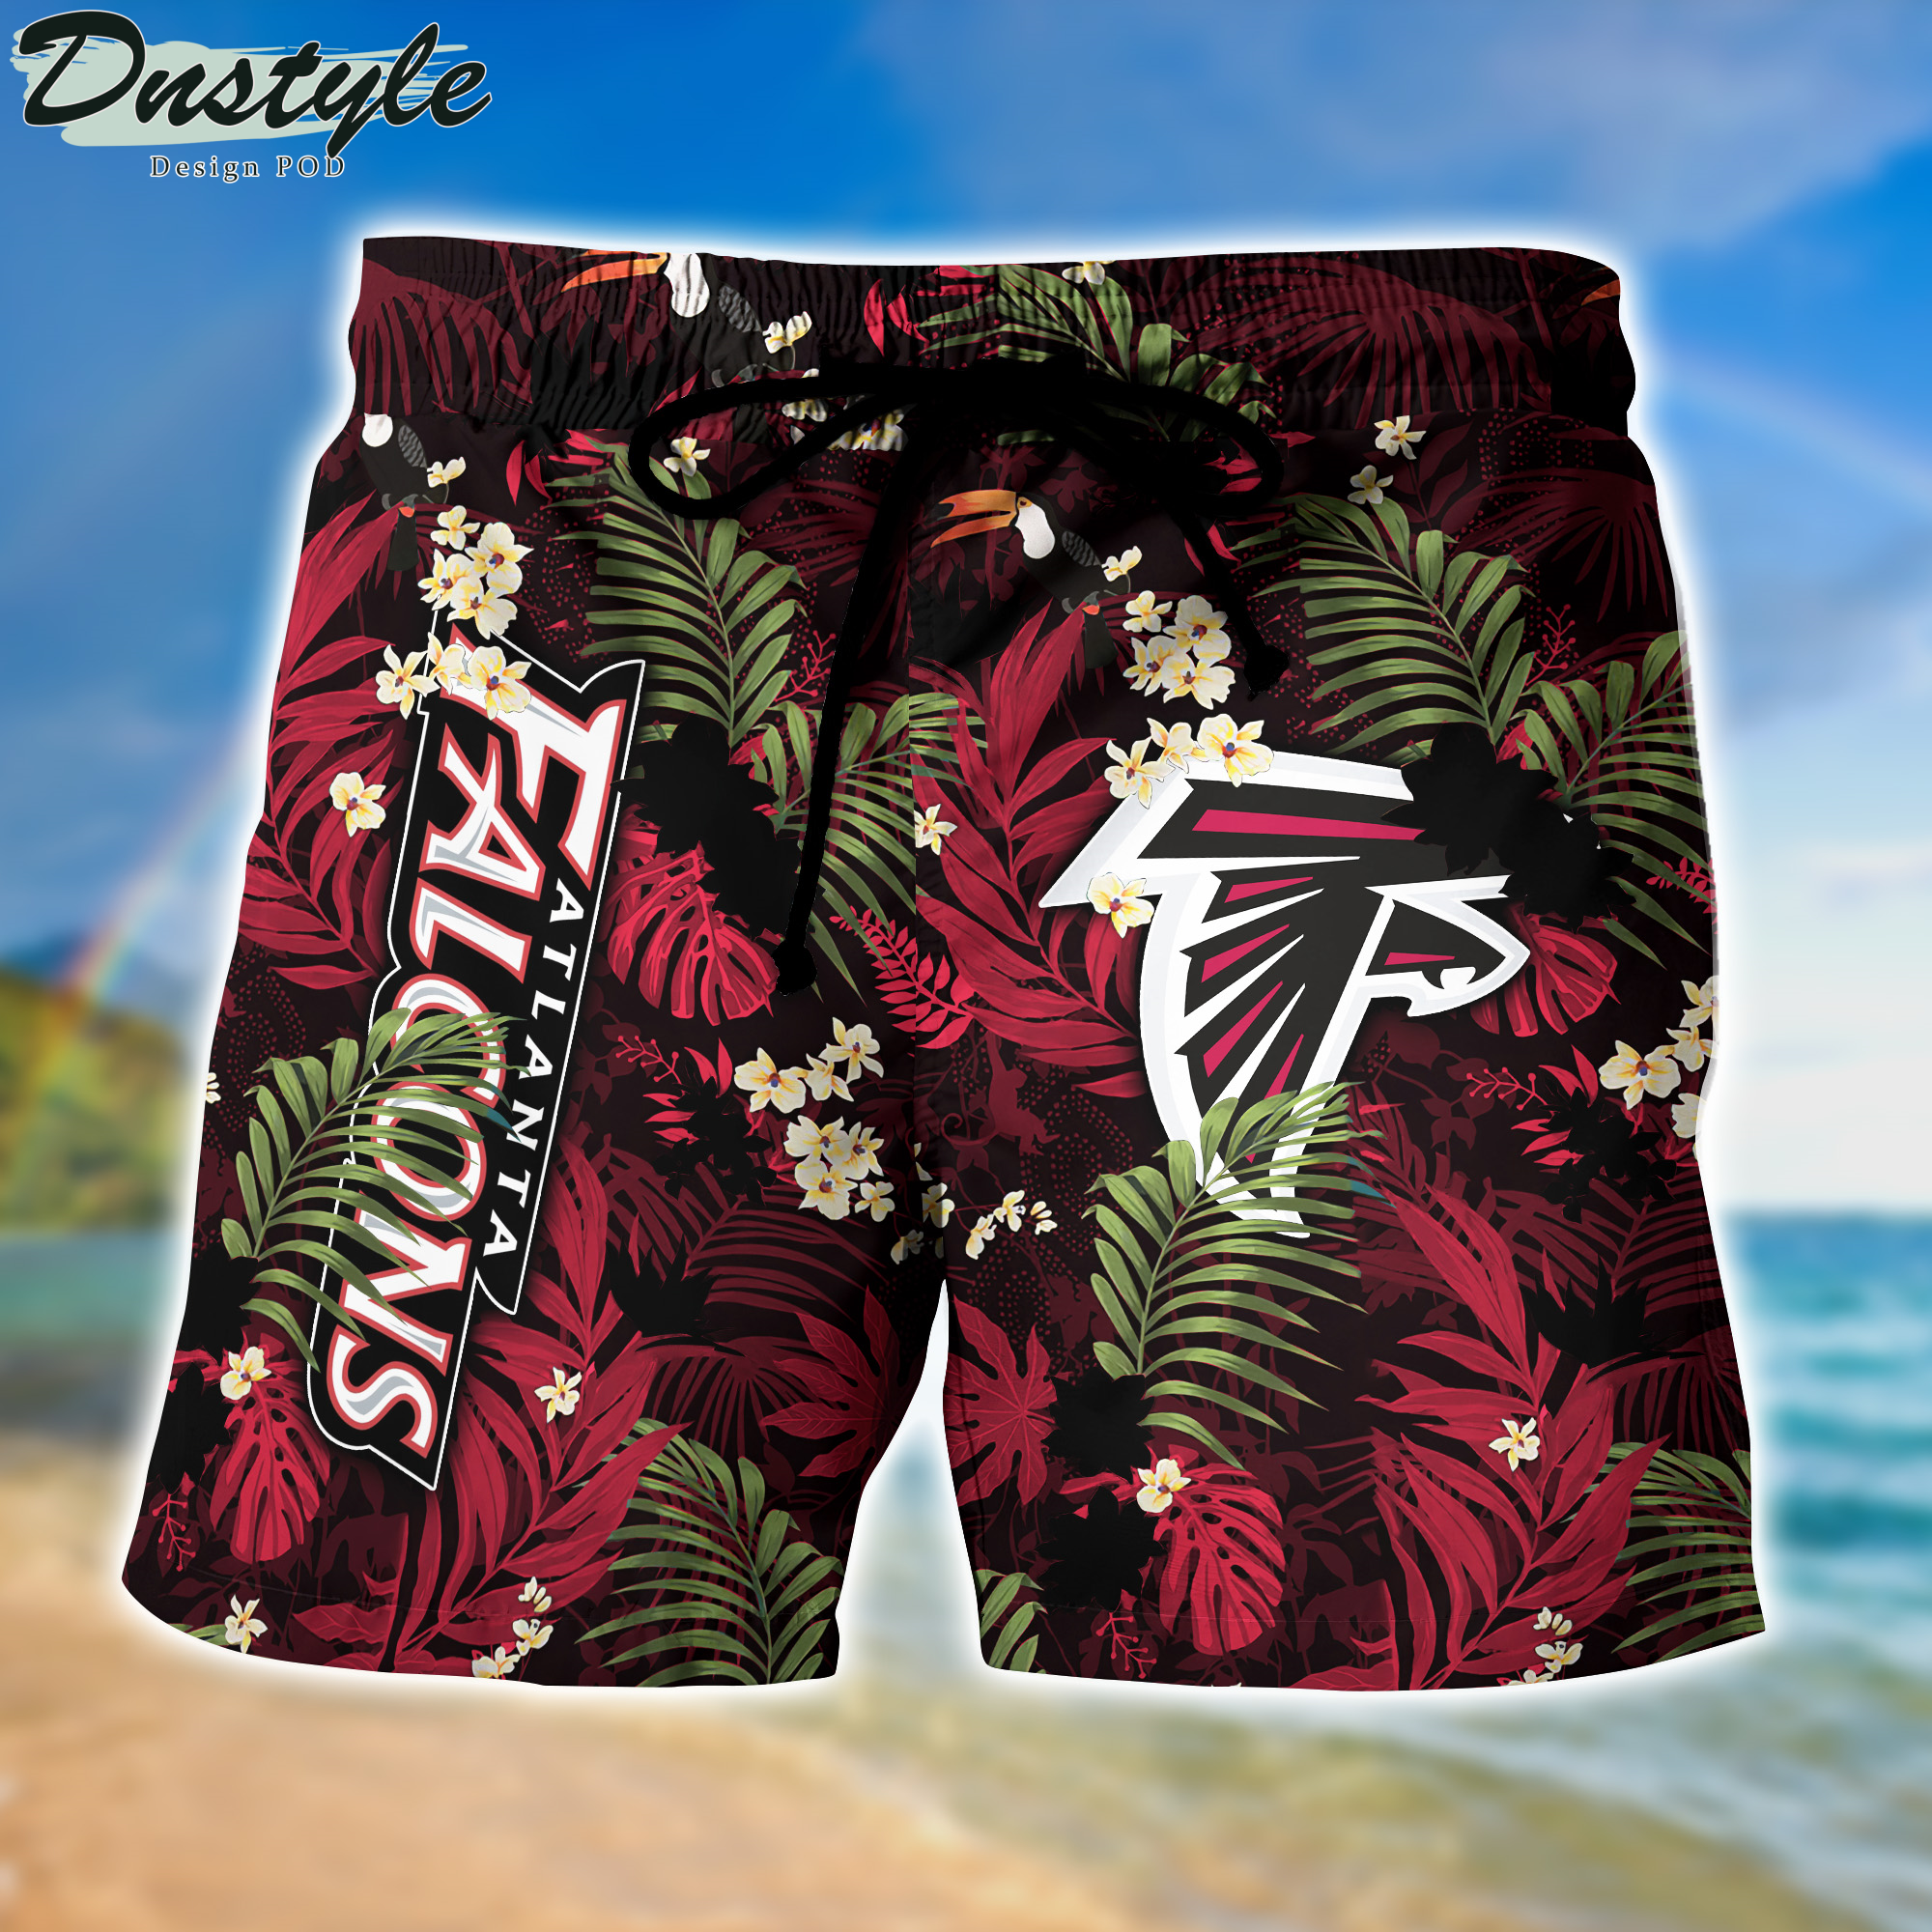 Atlanta Falcons Hawaii Shirt And Shorts New Collection